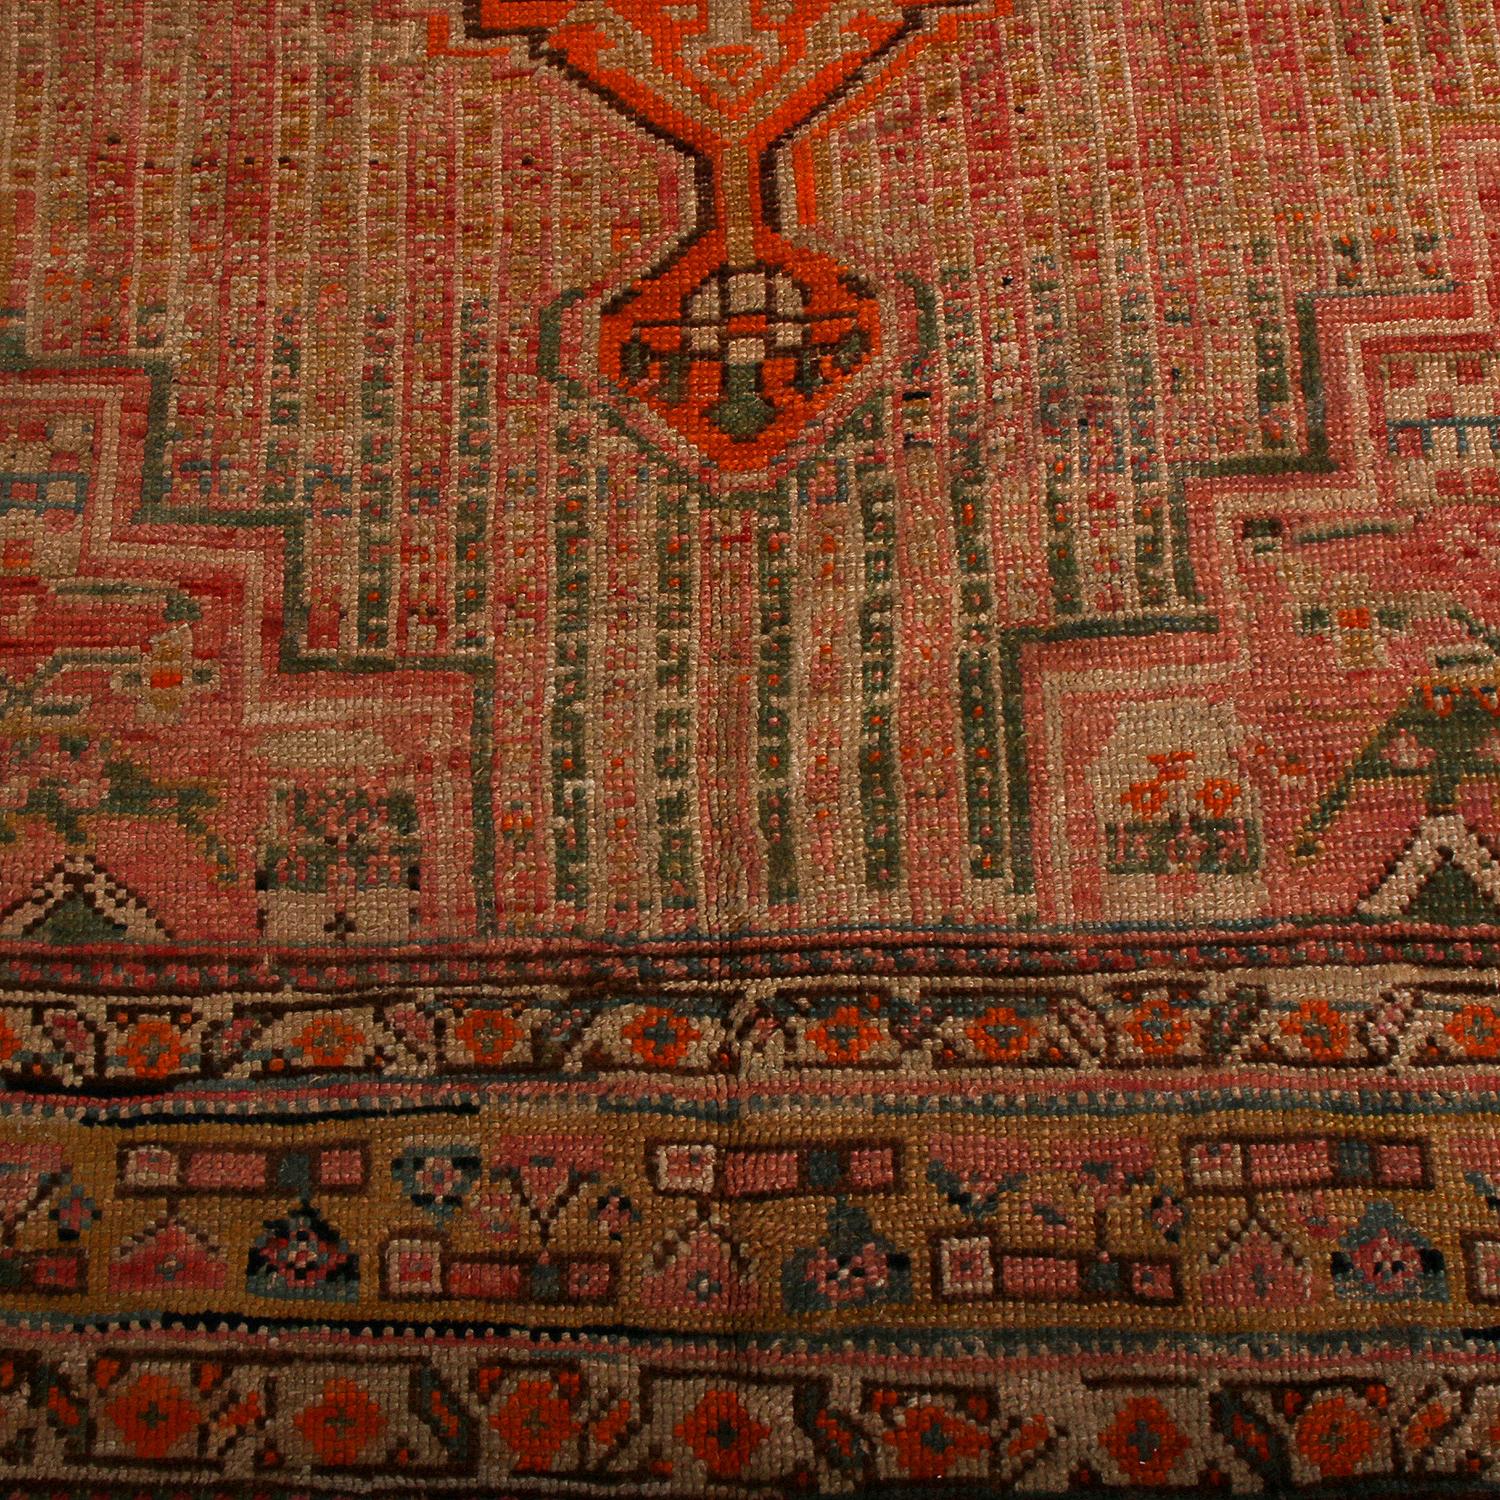 Dieser 7x12 große antike Perserteppich ist ein Stammesteppich aus der Mitte des Jahrhunderts, der vermutlich aus Gaschgai stammt. Handgeknüpft in Wolle um 1910-1920, bevorzugt das Design Medaillons und geometrische Muster in Rot, Beige-Braun und